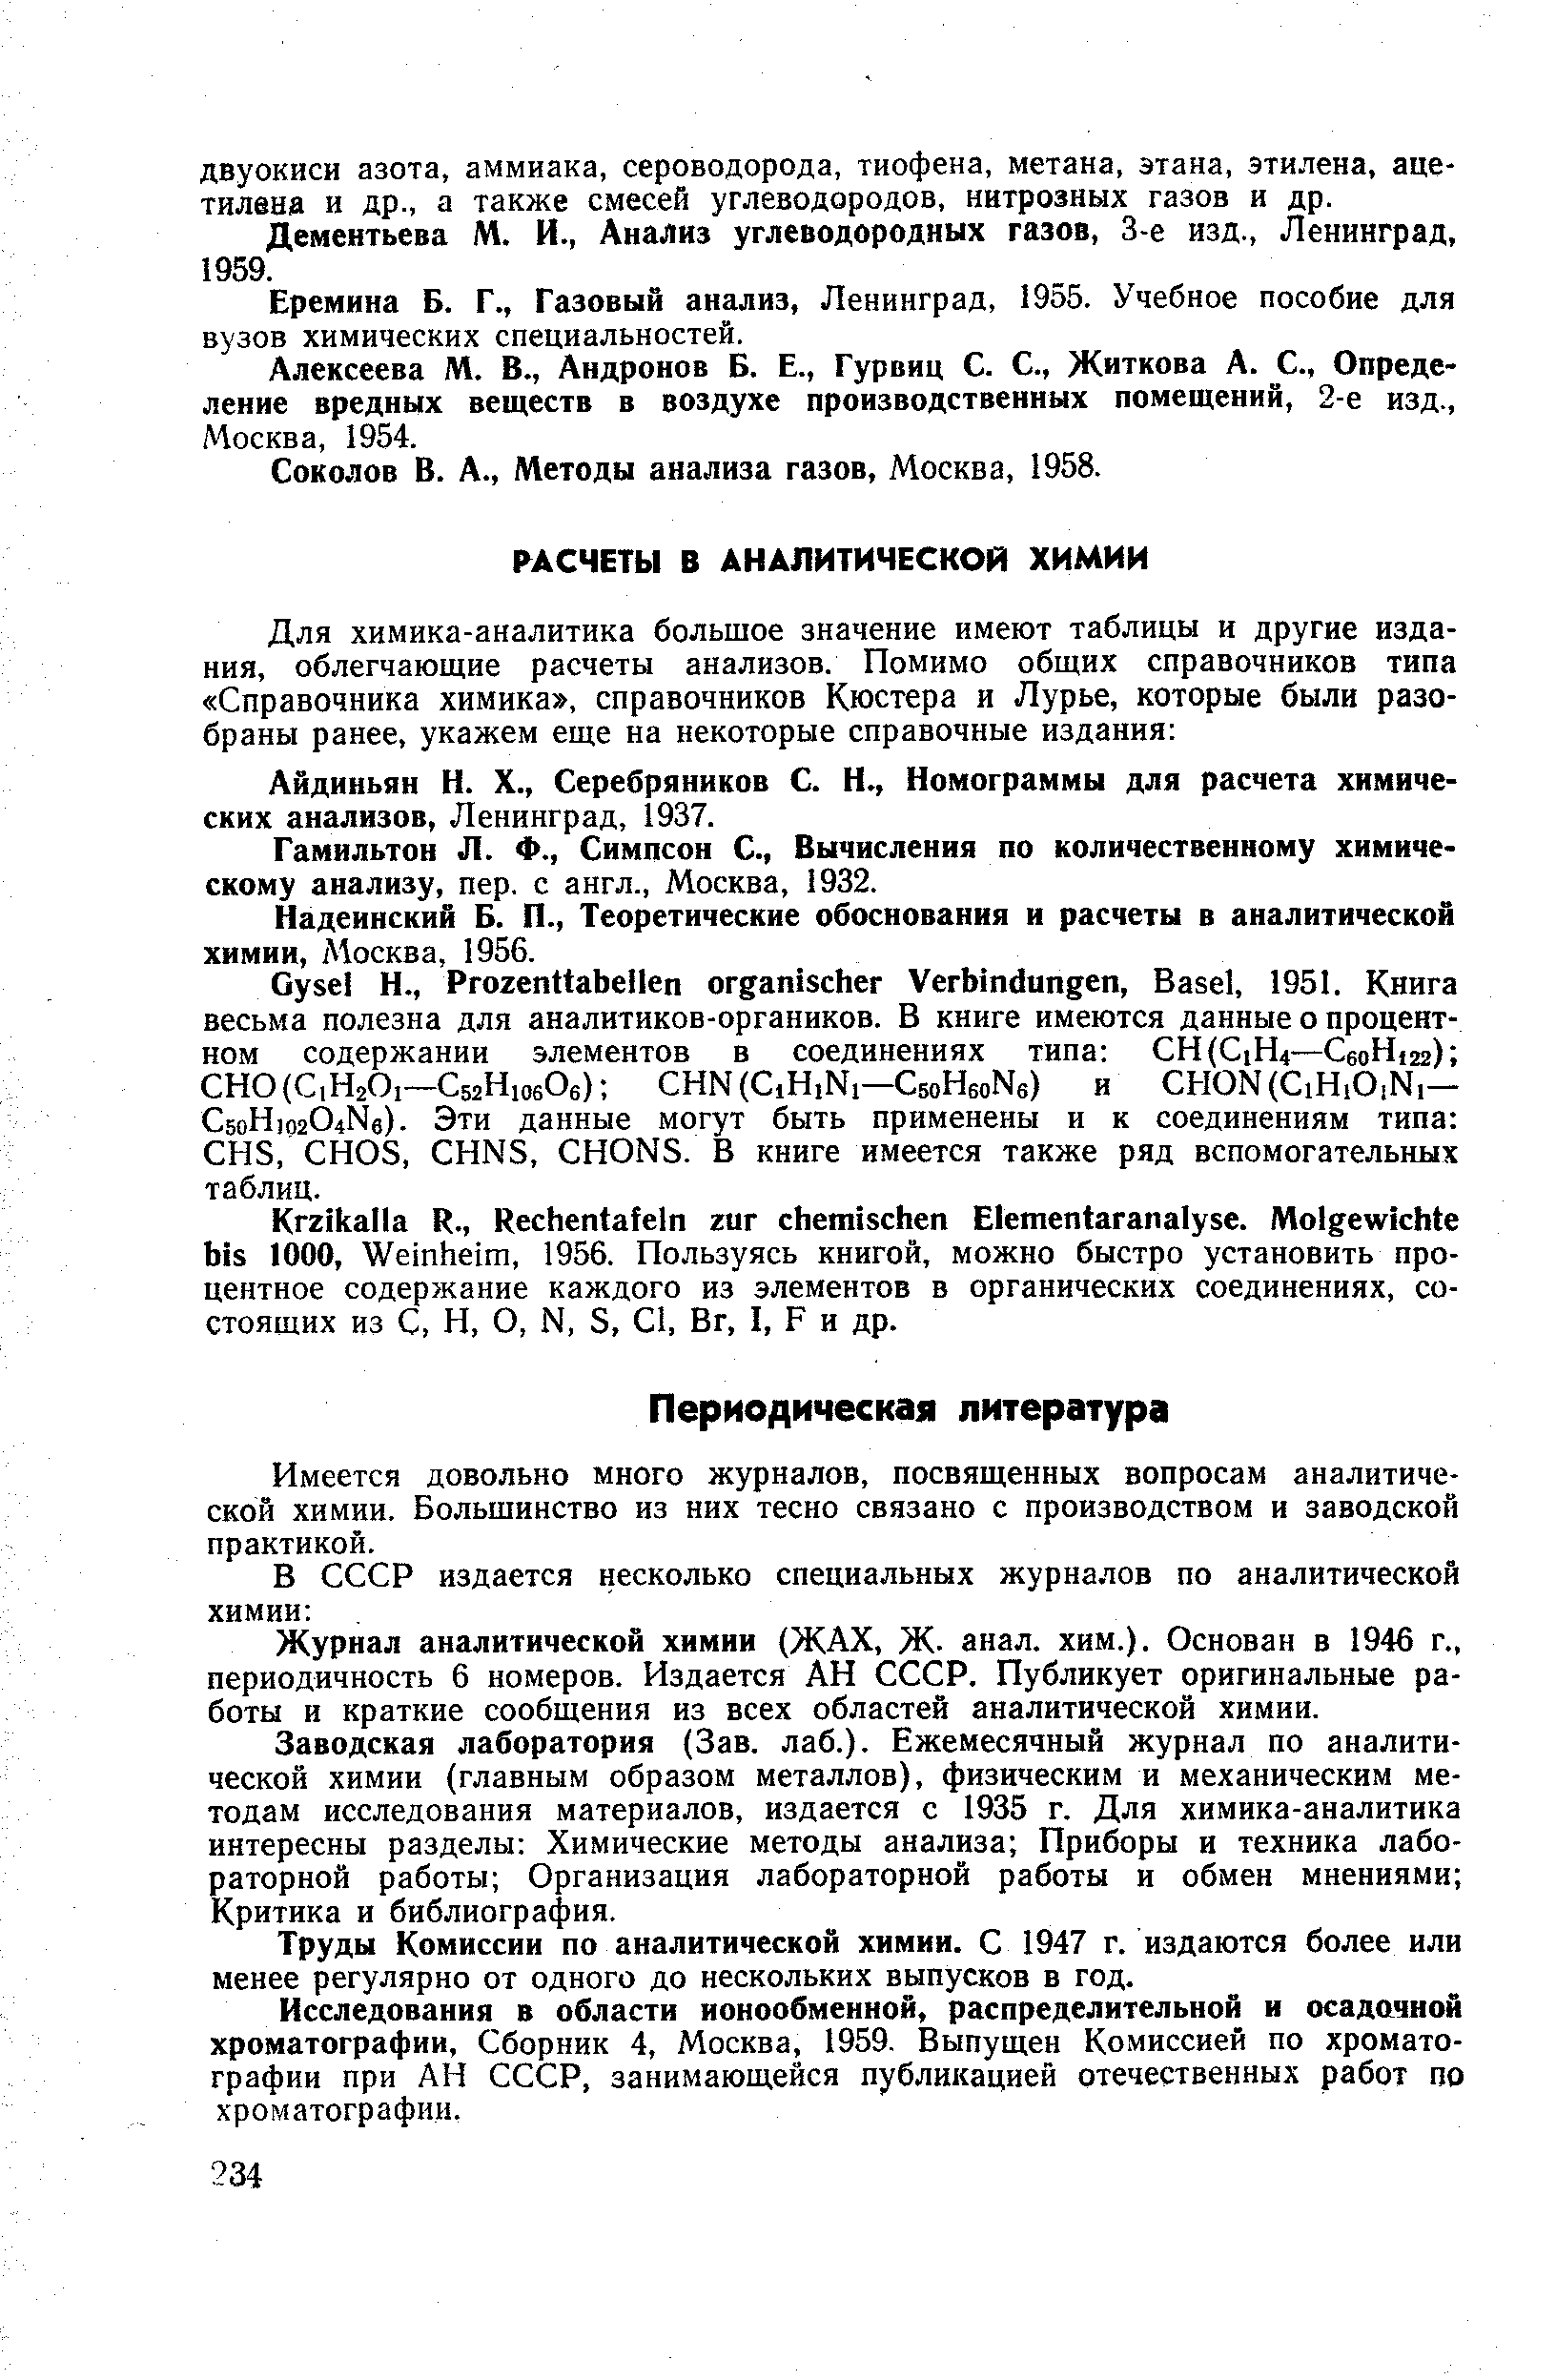 Гамильтон Л. Ф., Симпсон С., Вычисления по количественному химическому анализу, пер. с англ., Москва, 1932.